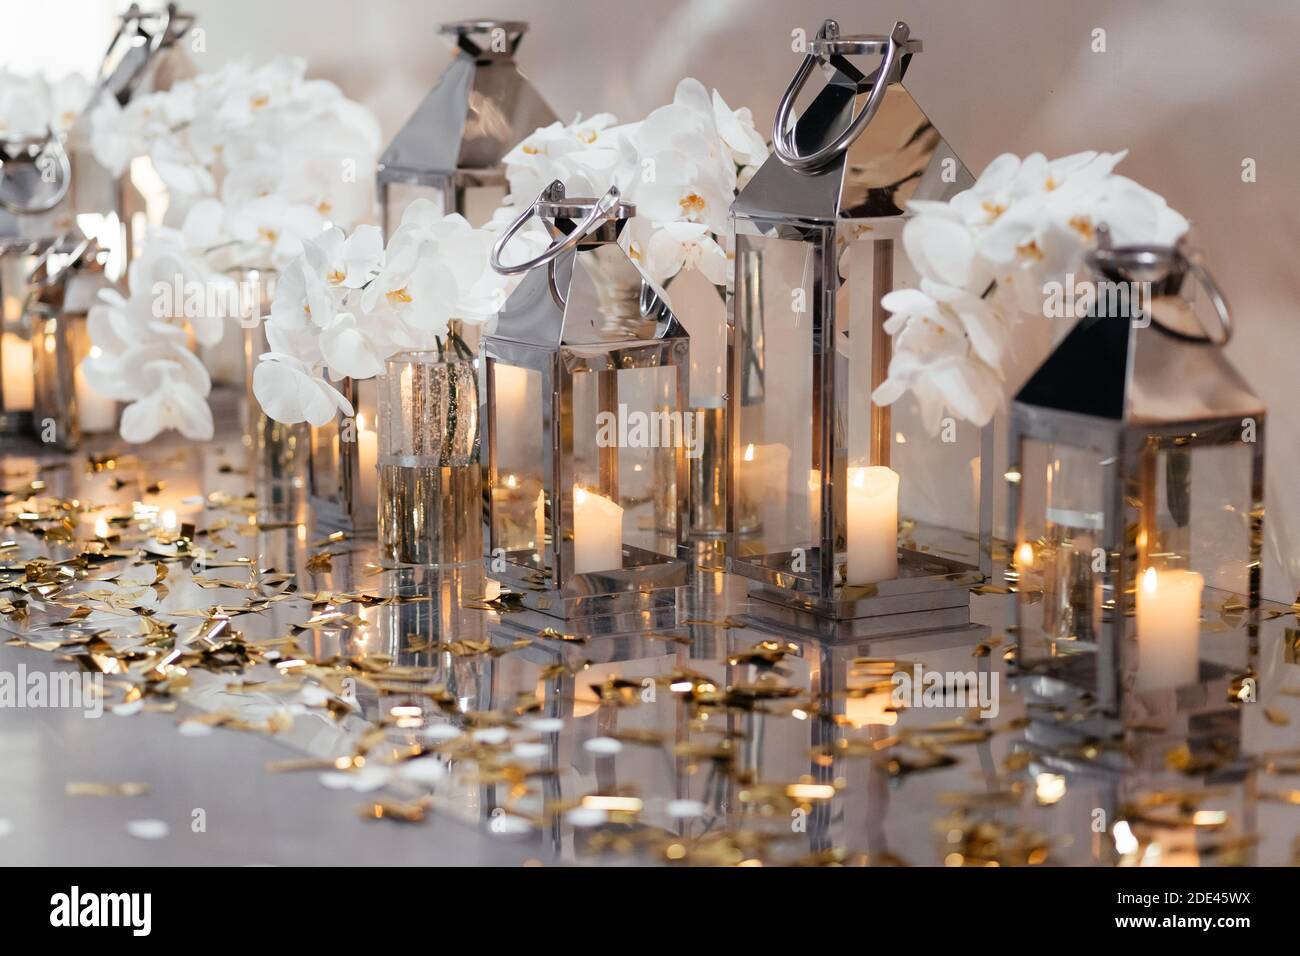 Petites bougies dans les chandeliers en verre décorés d'orchidées blanches. Décorations de restaurant de mariage. Banquet de mariage. Banque D'Images